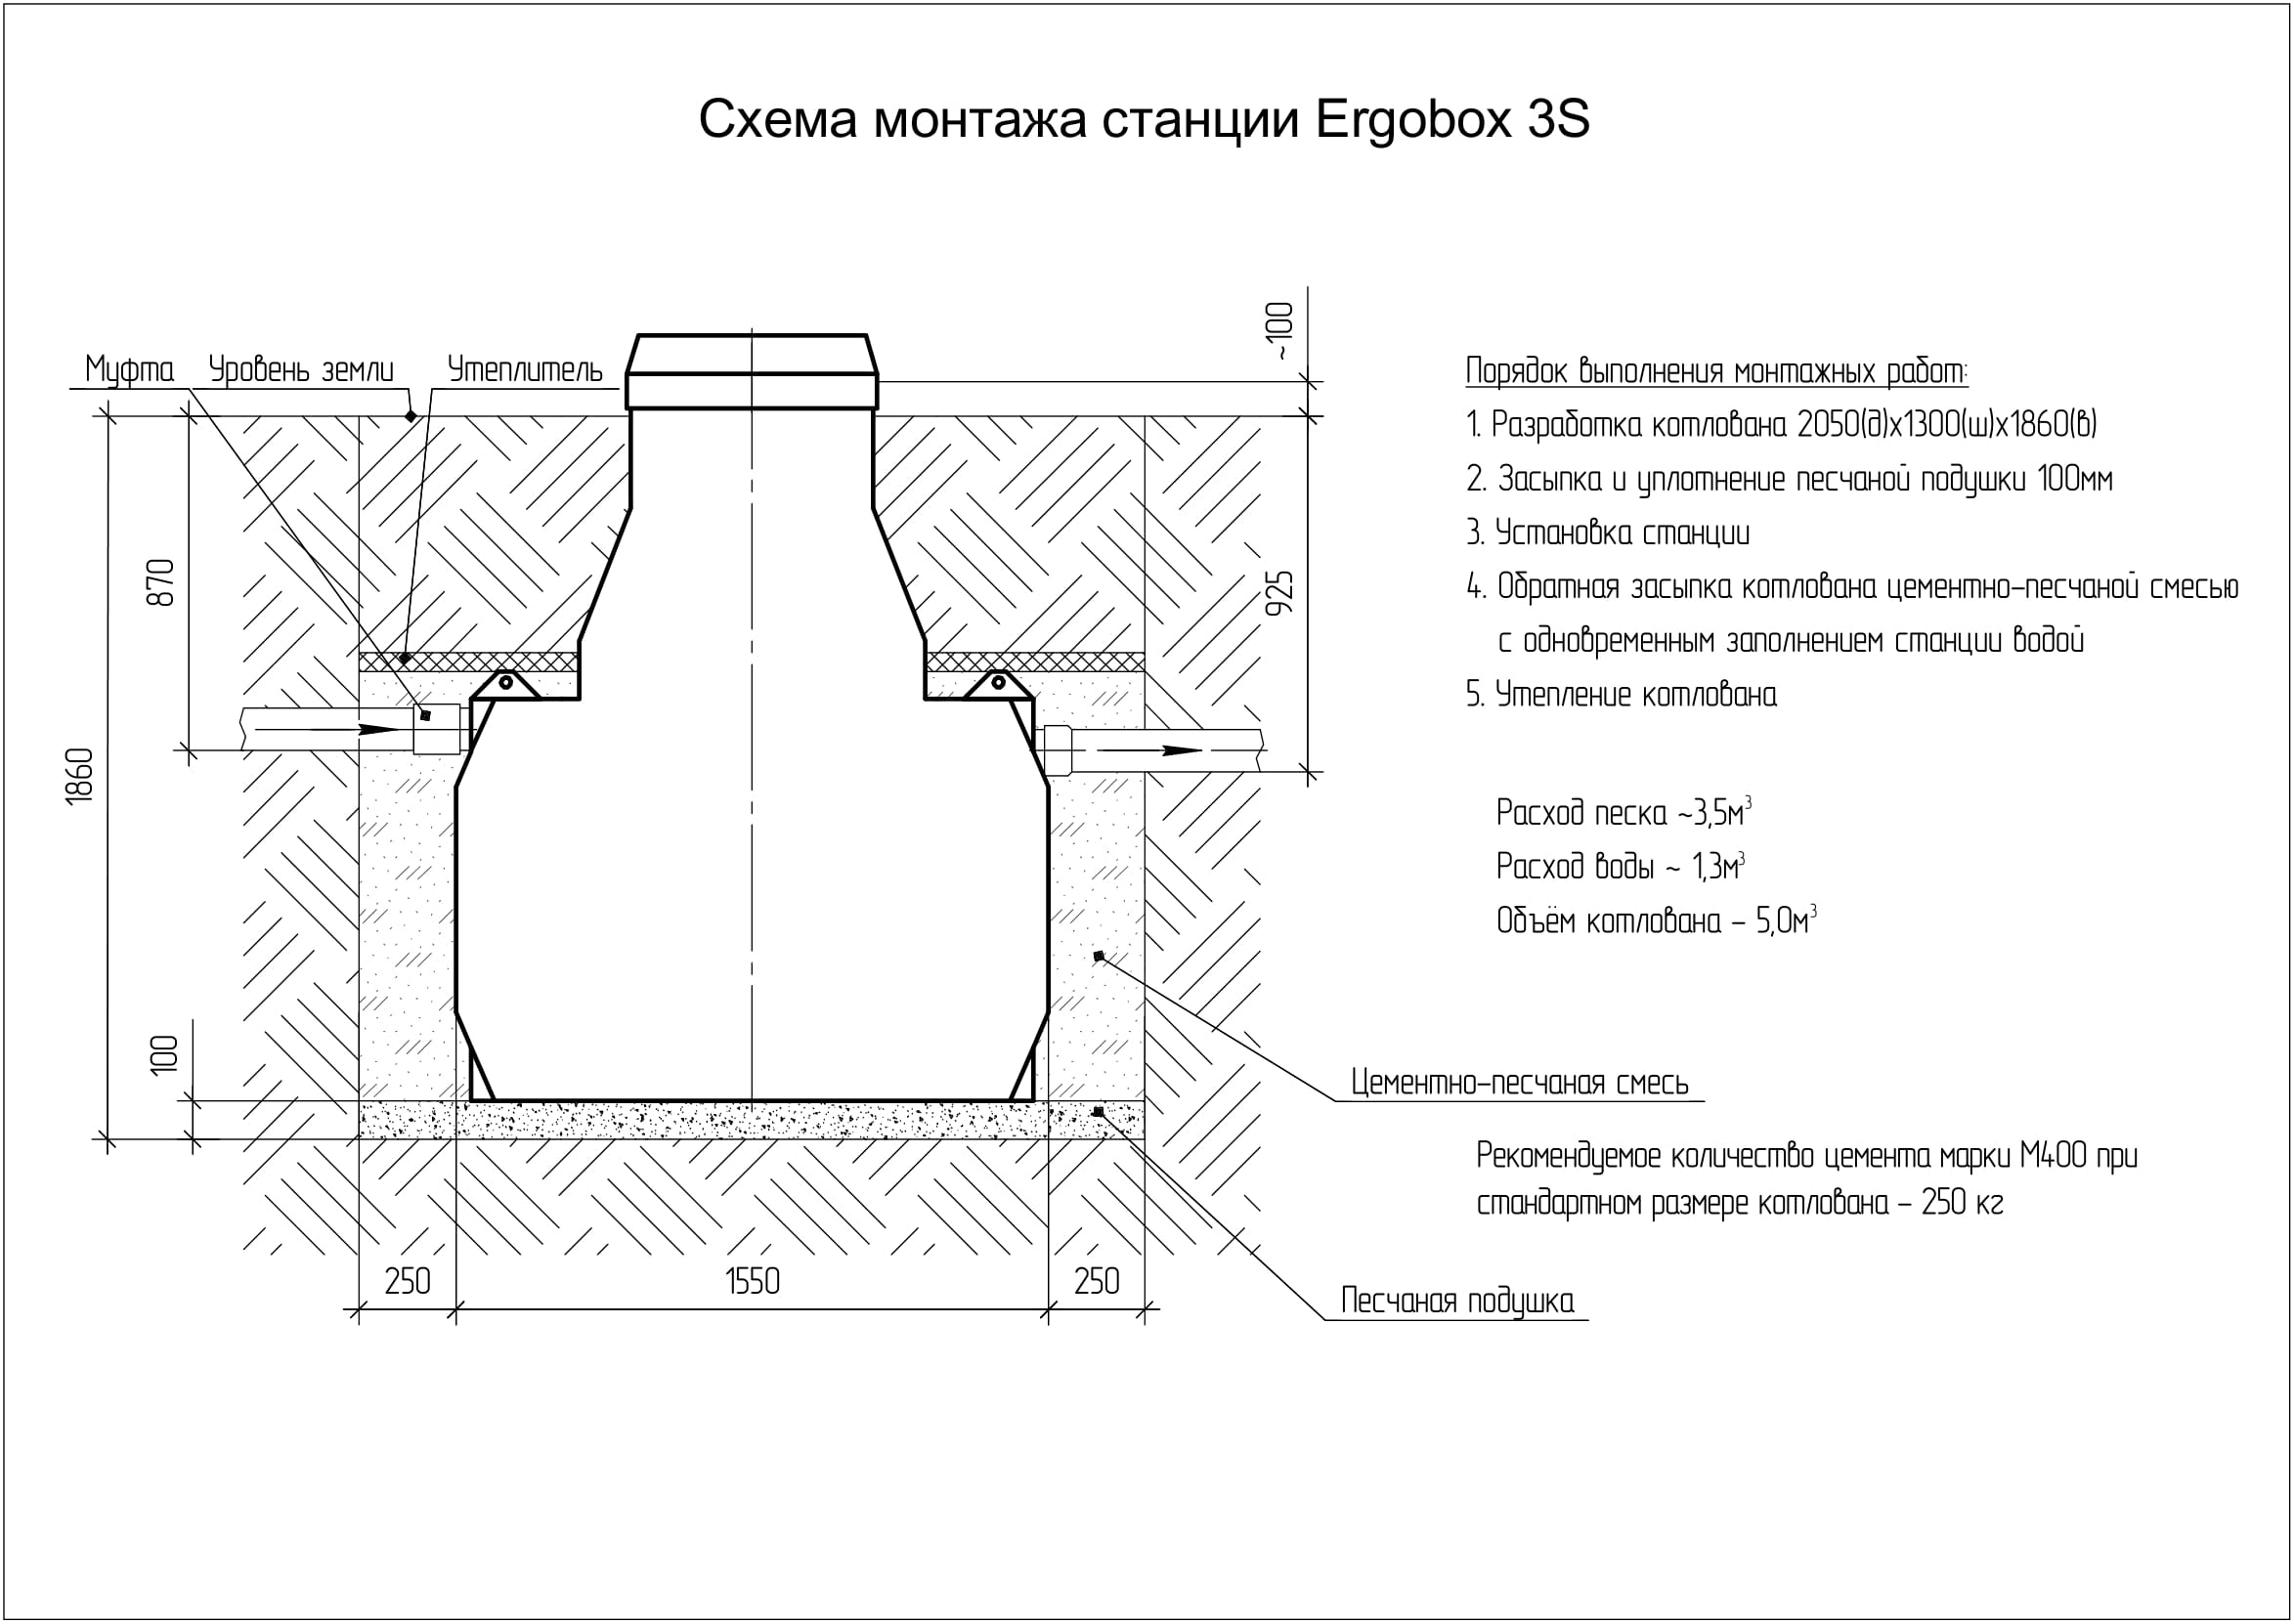 Ergobox 3 S. Монтажные схемы